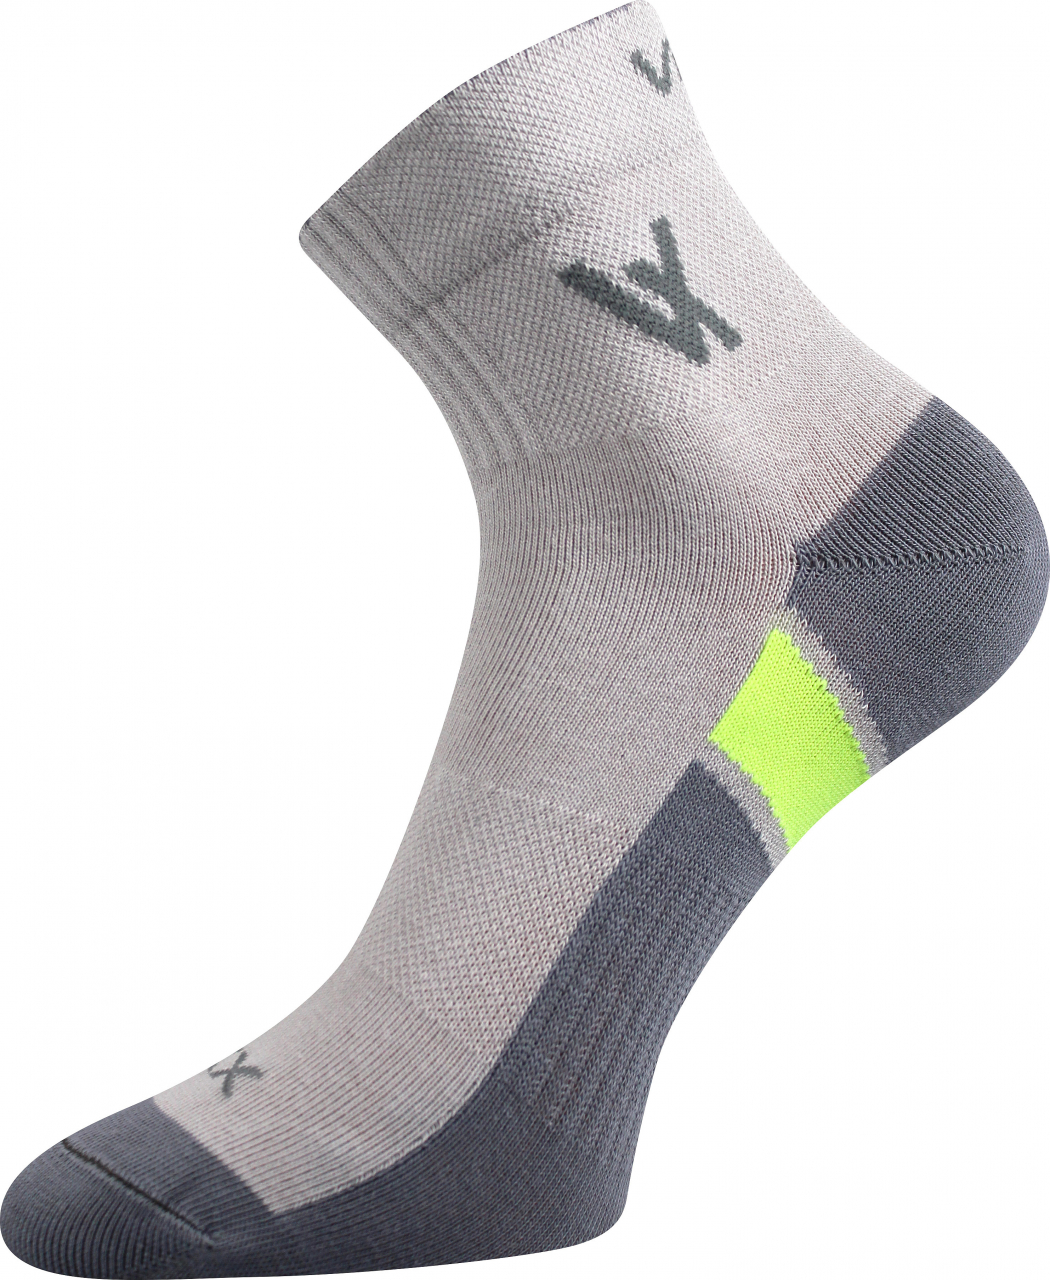 Ponožky sportovní Voxx Neo - světle šedé, 39-42